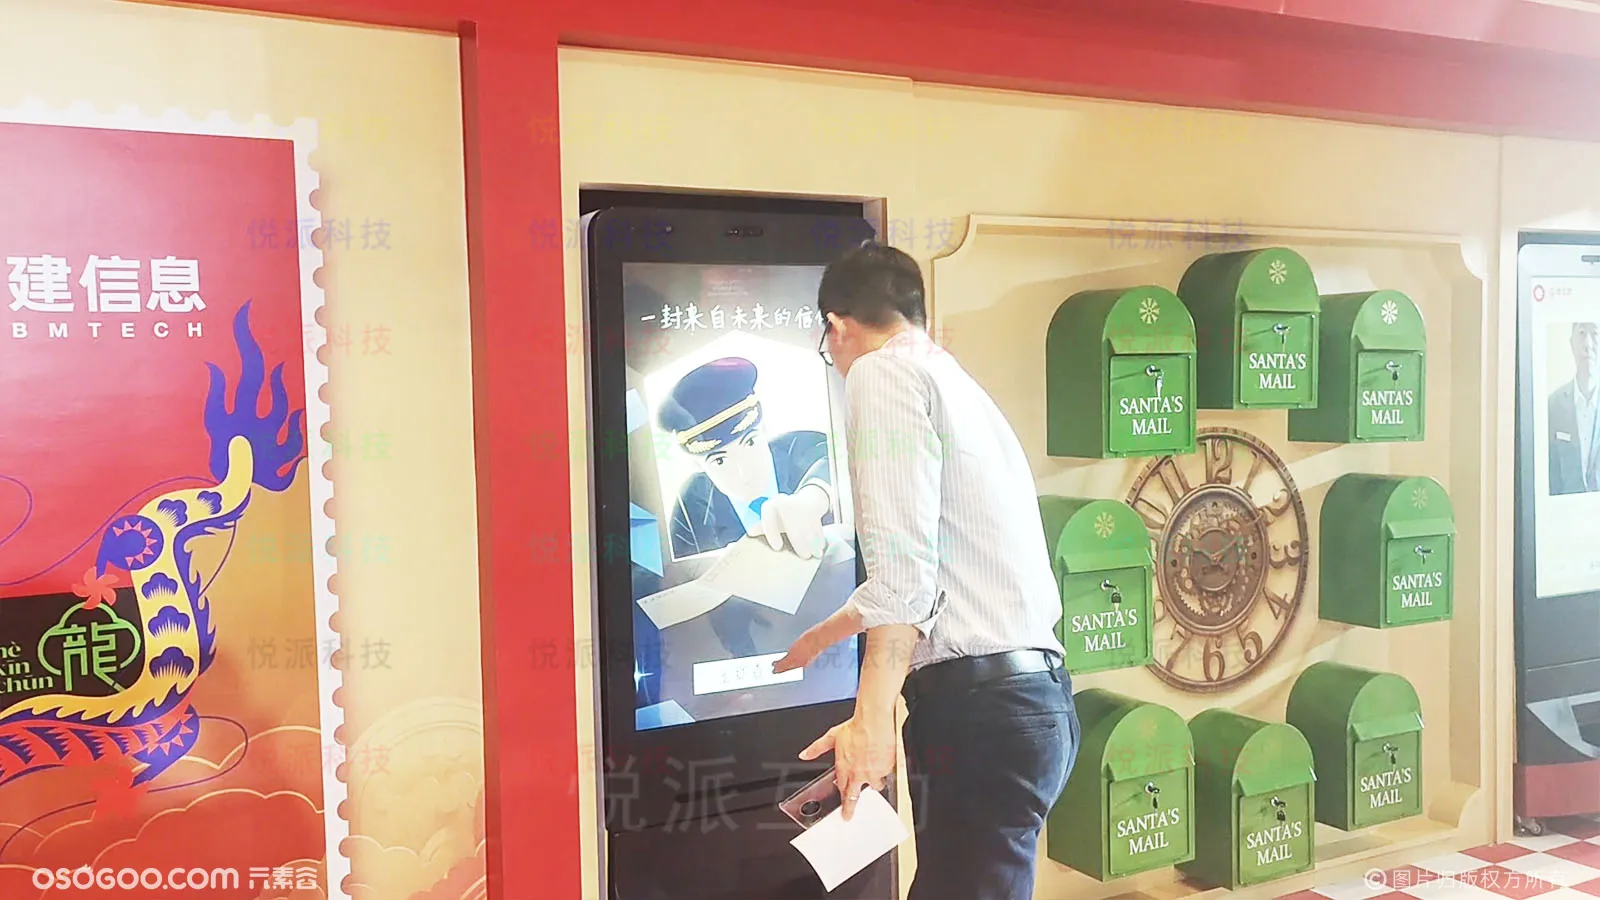 行业答谢场景暖场道具时光邮局创意AI拍照互动装置